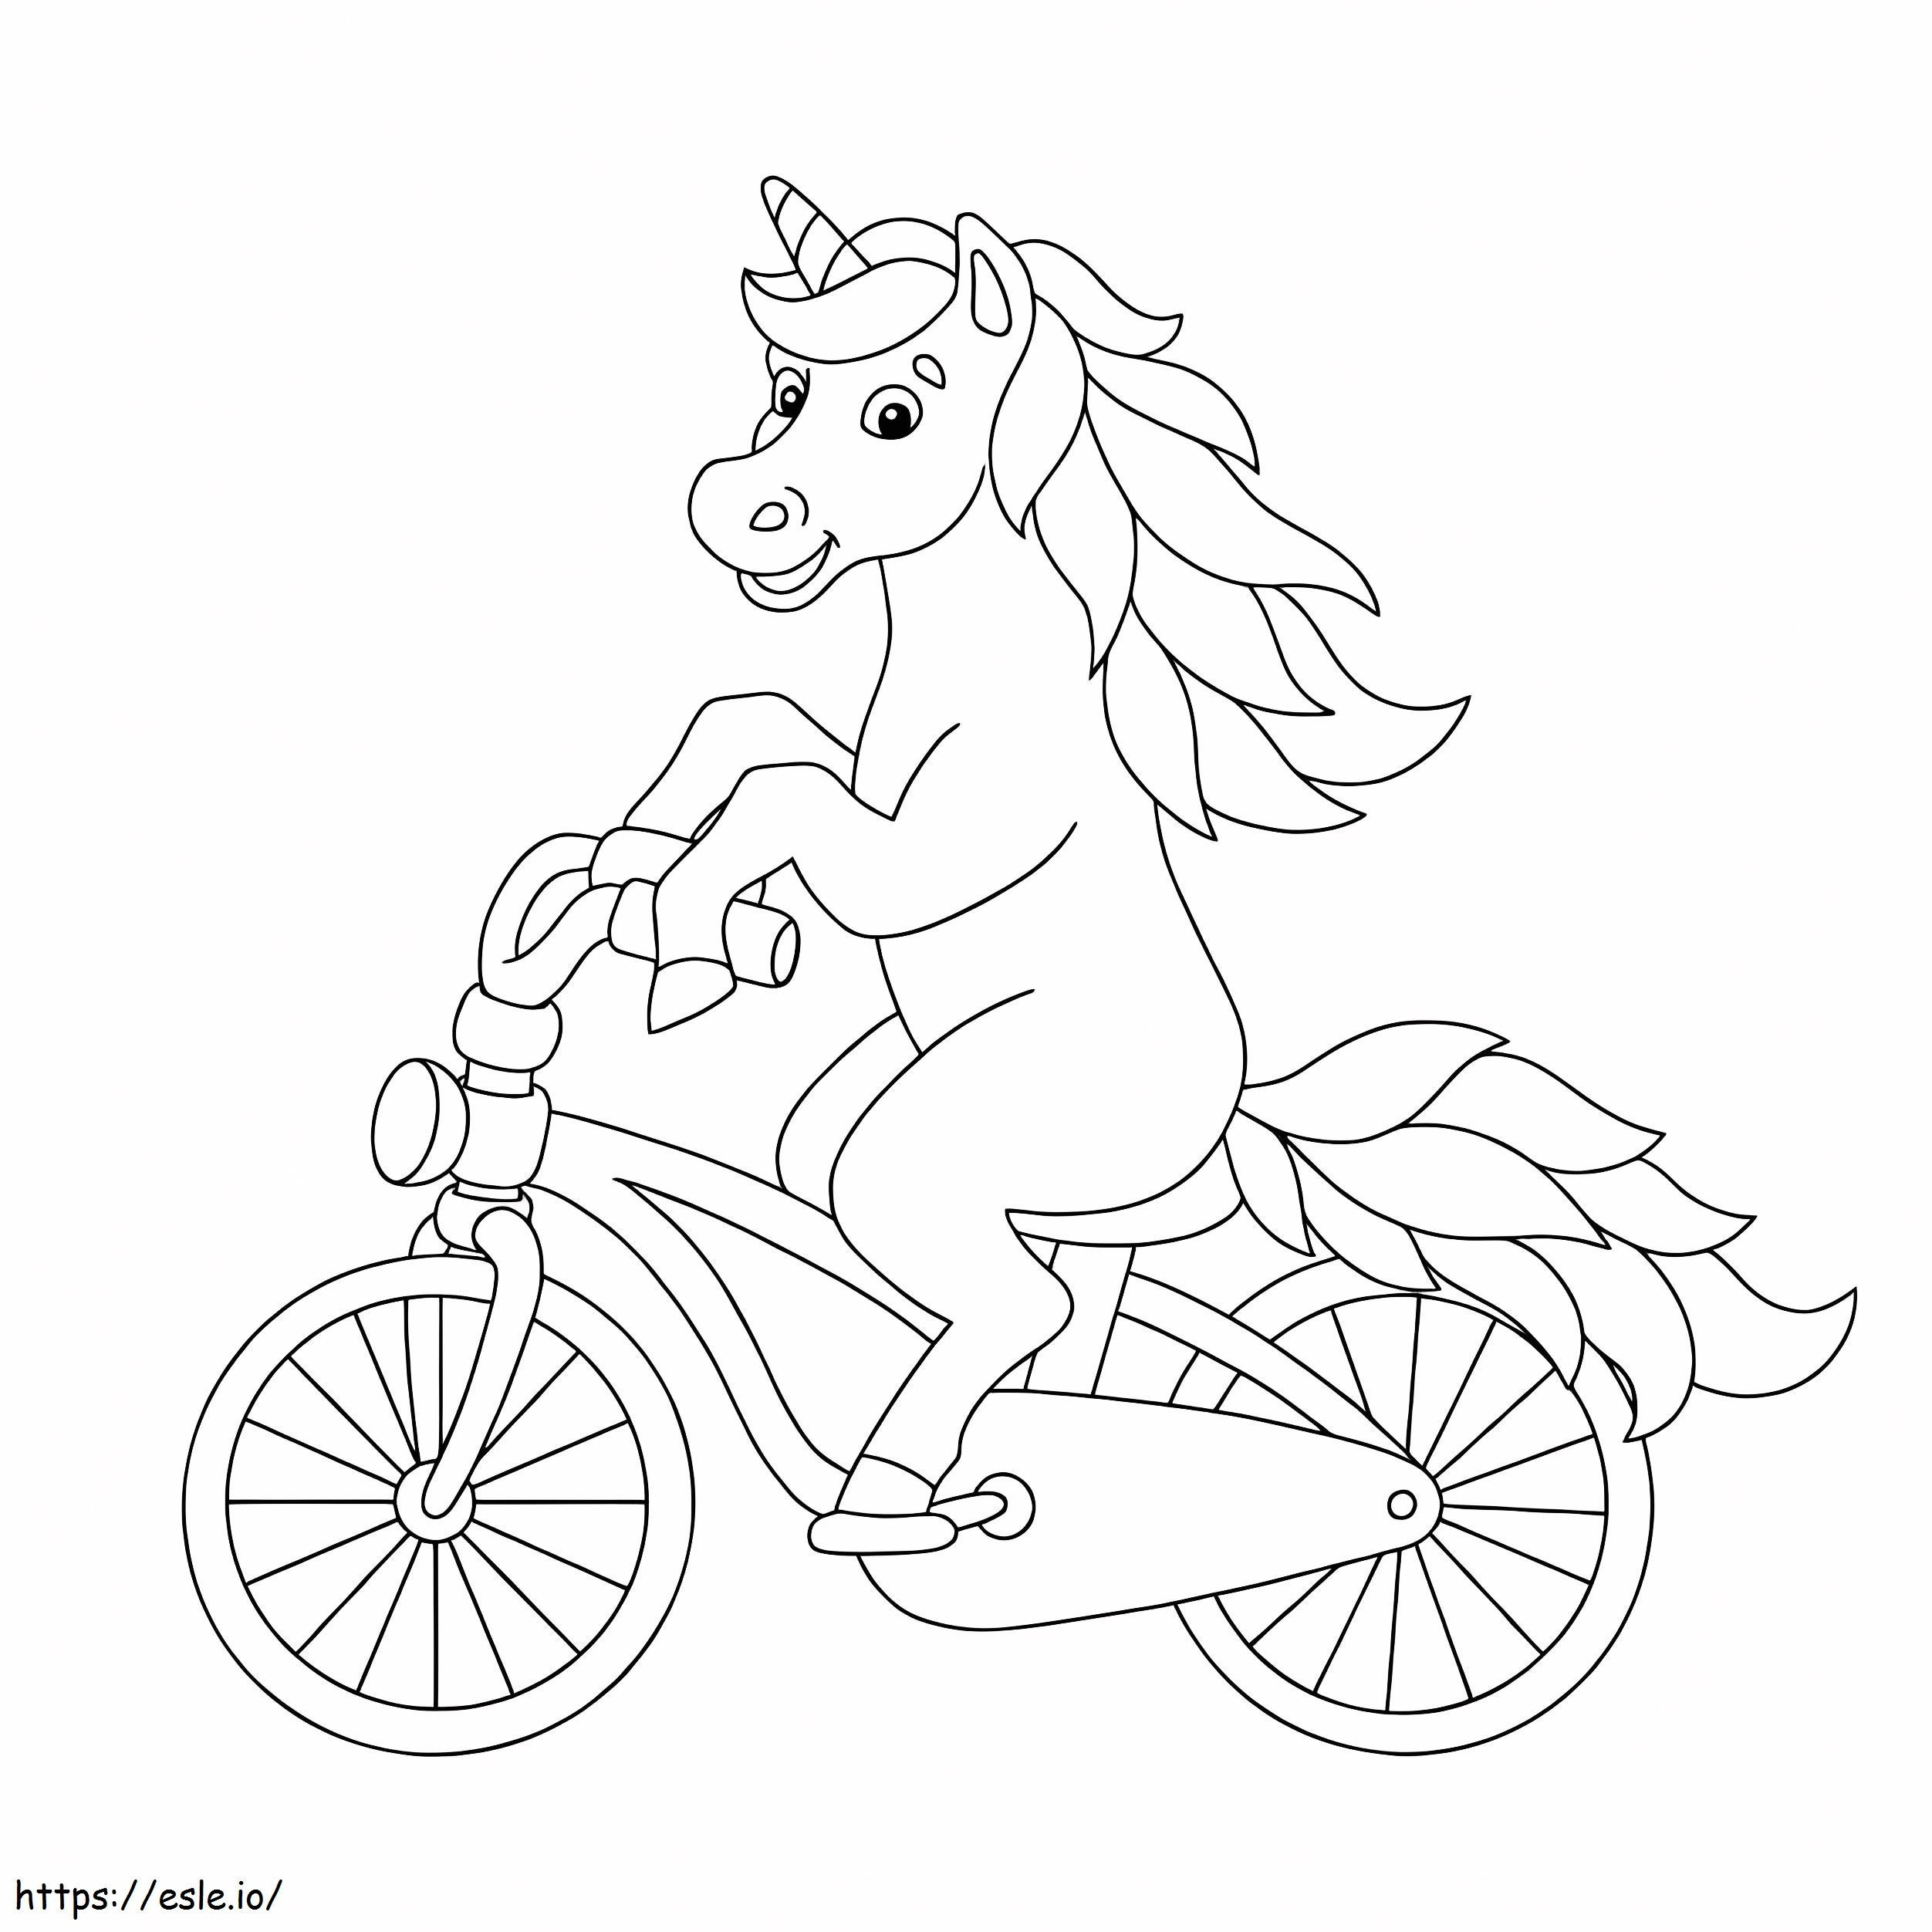 Unicornio en bicicleta para colorear